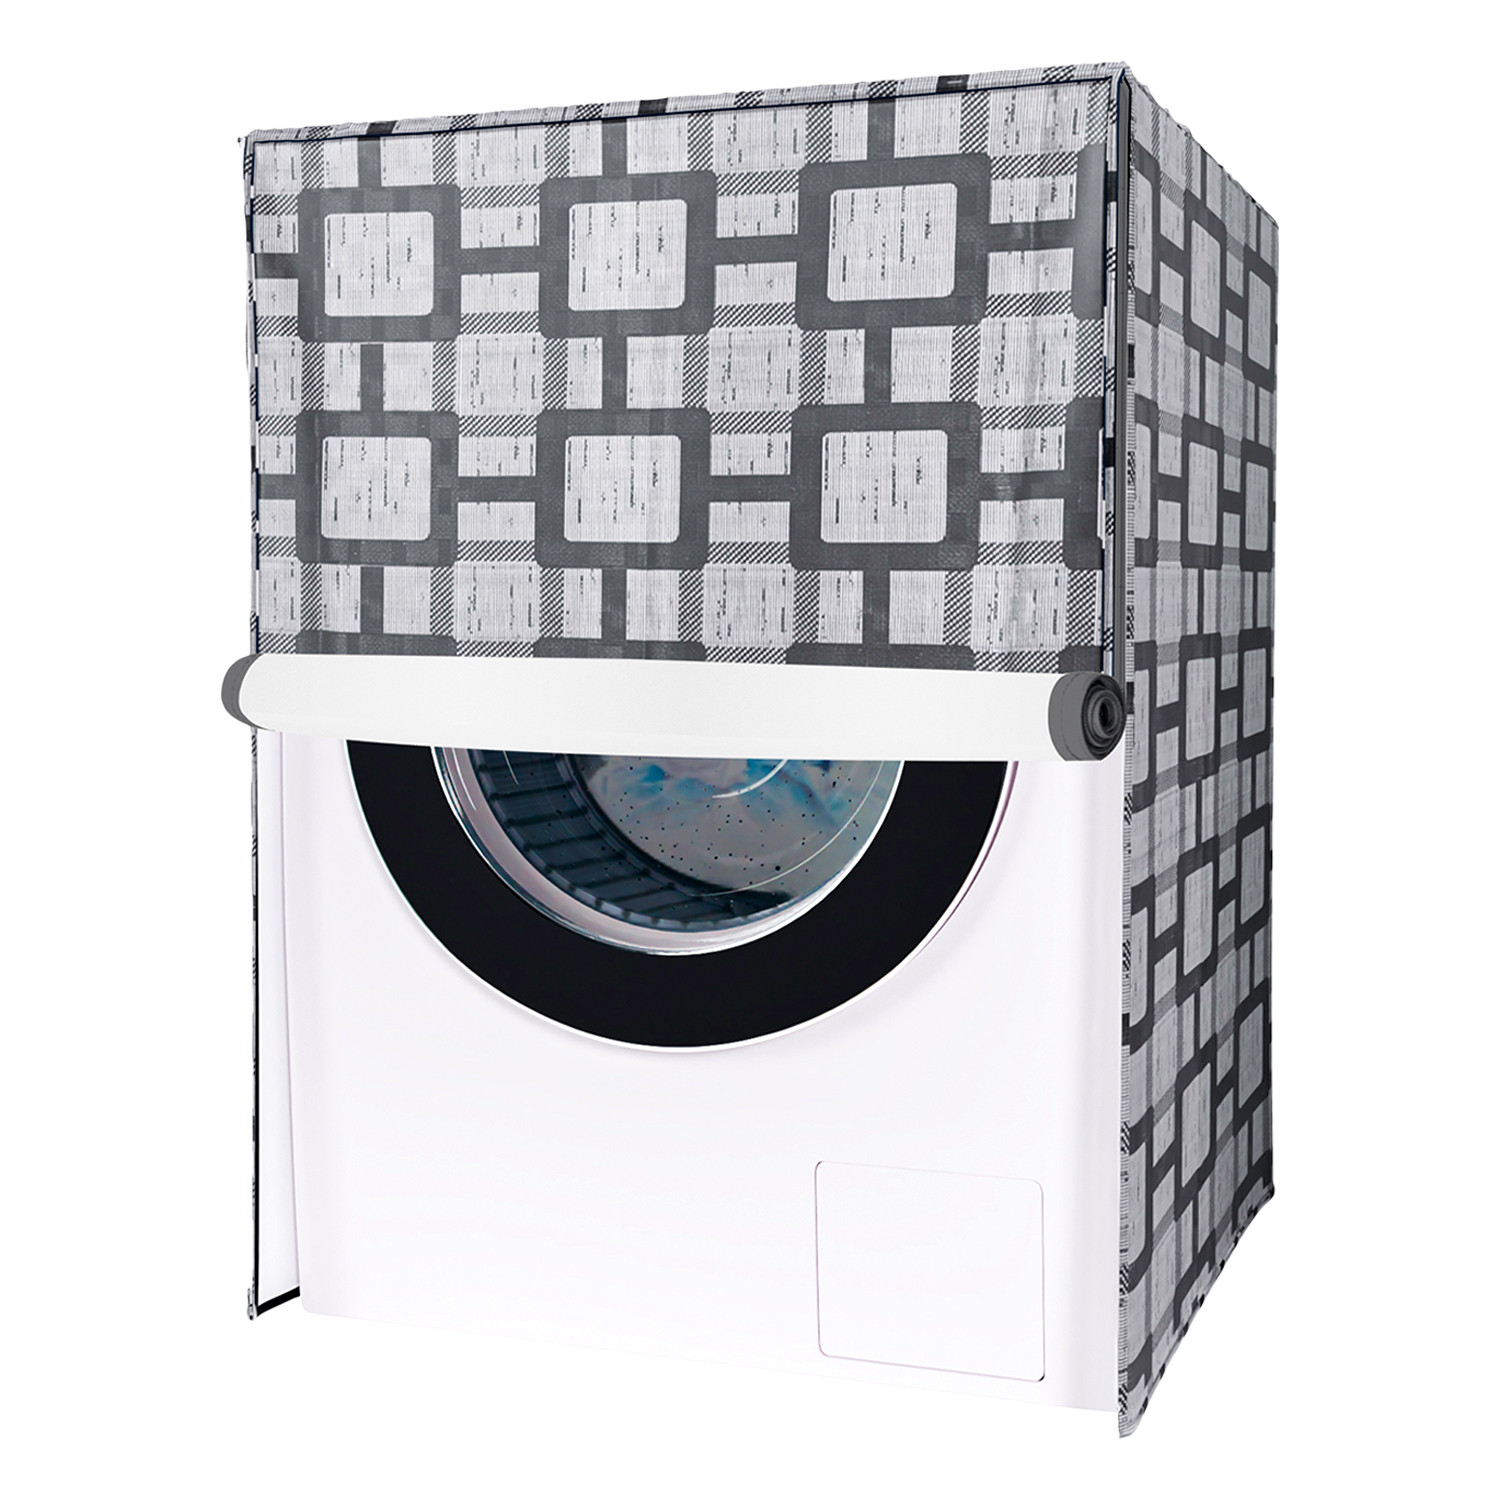 Kuber Industries Washing Machine Cover | Big Check Washing Machine Cover | Soft PVC | Front Load Washing Machine Cover | Gray